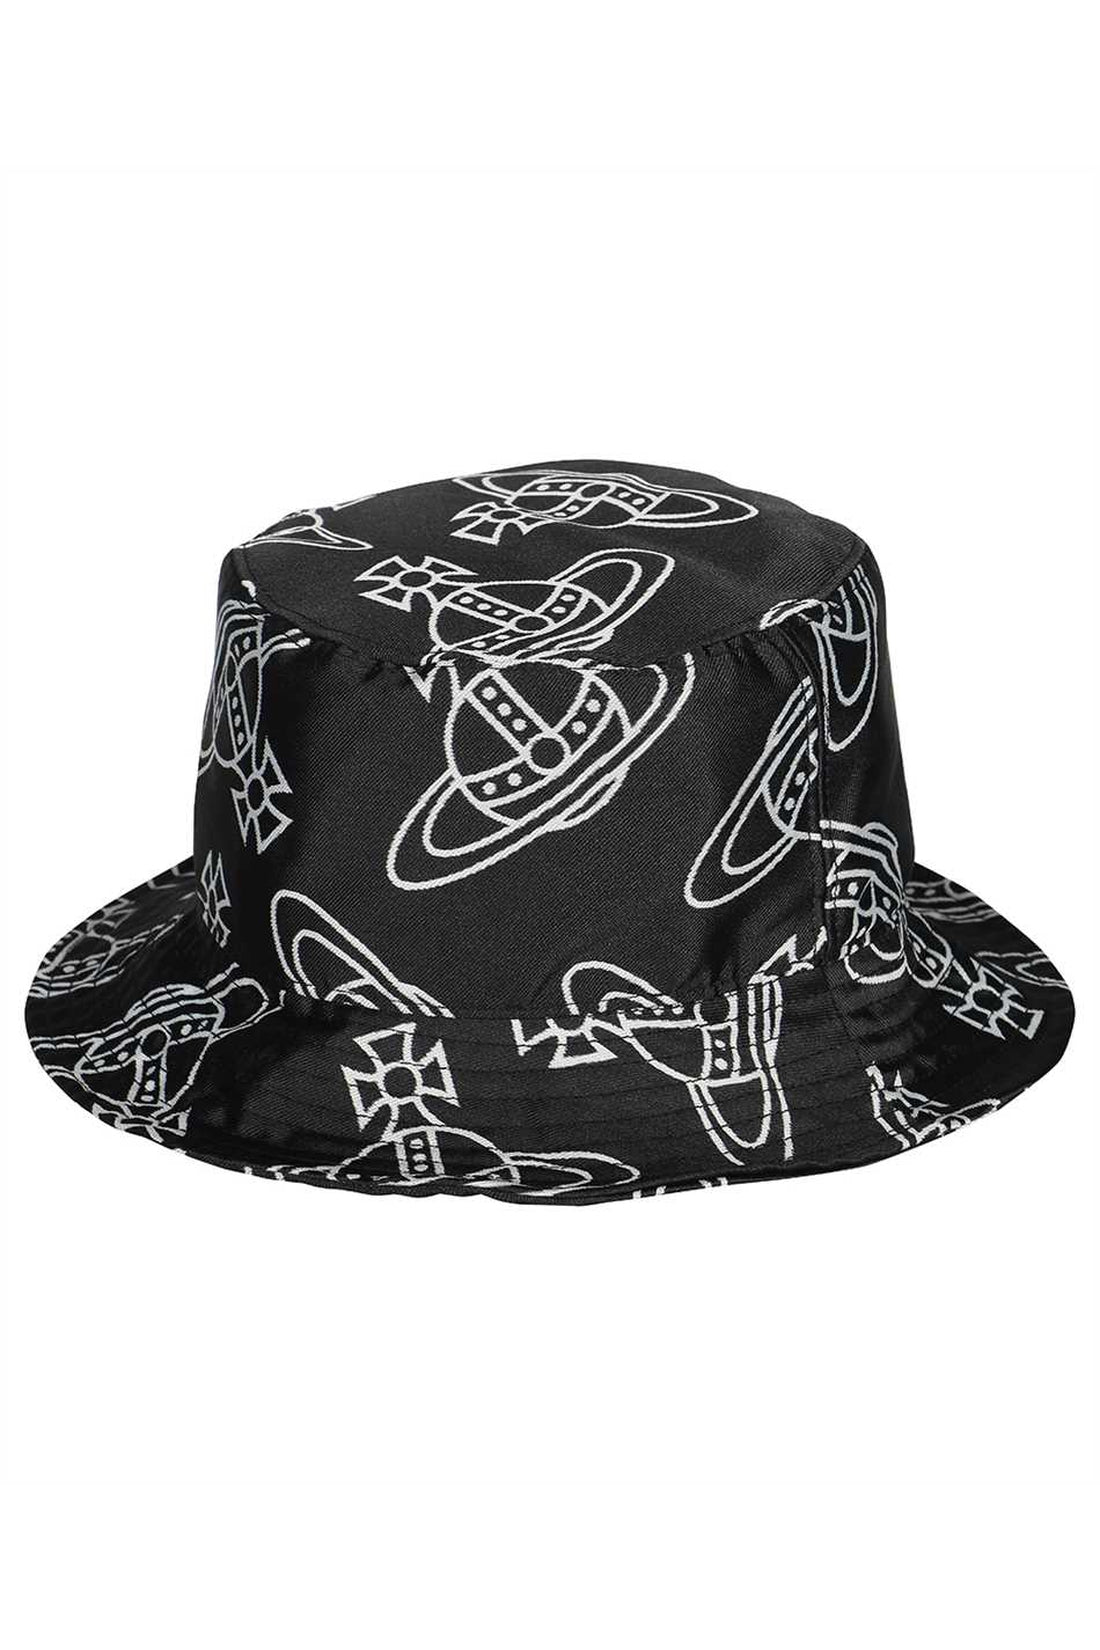 Vivienne Westwood-OUTLET-SALE-Bucket hat-ARCHIVIST